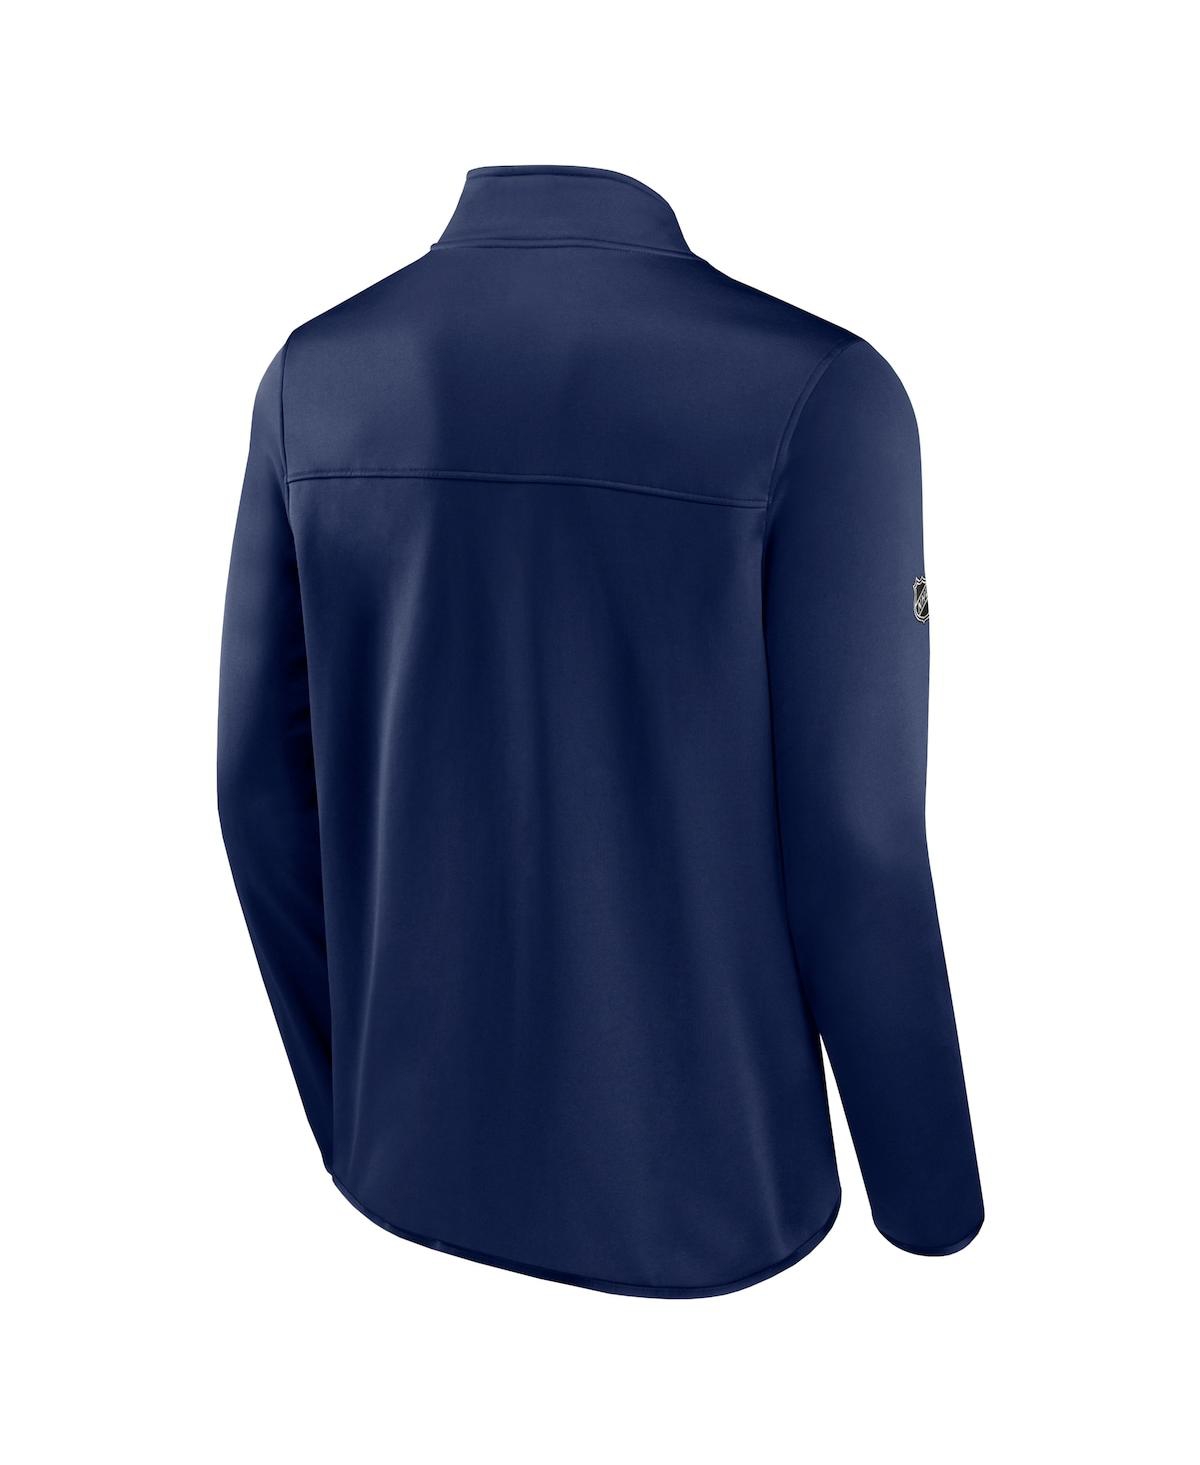 Shop Fanatics Men's  Navy New York Rangers Authentic Pro Rink Fleece Full-zip Jacket